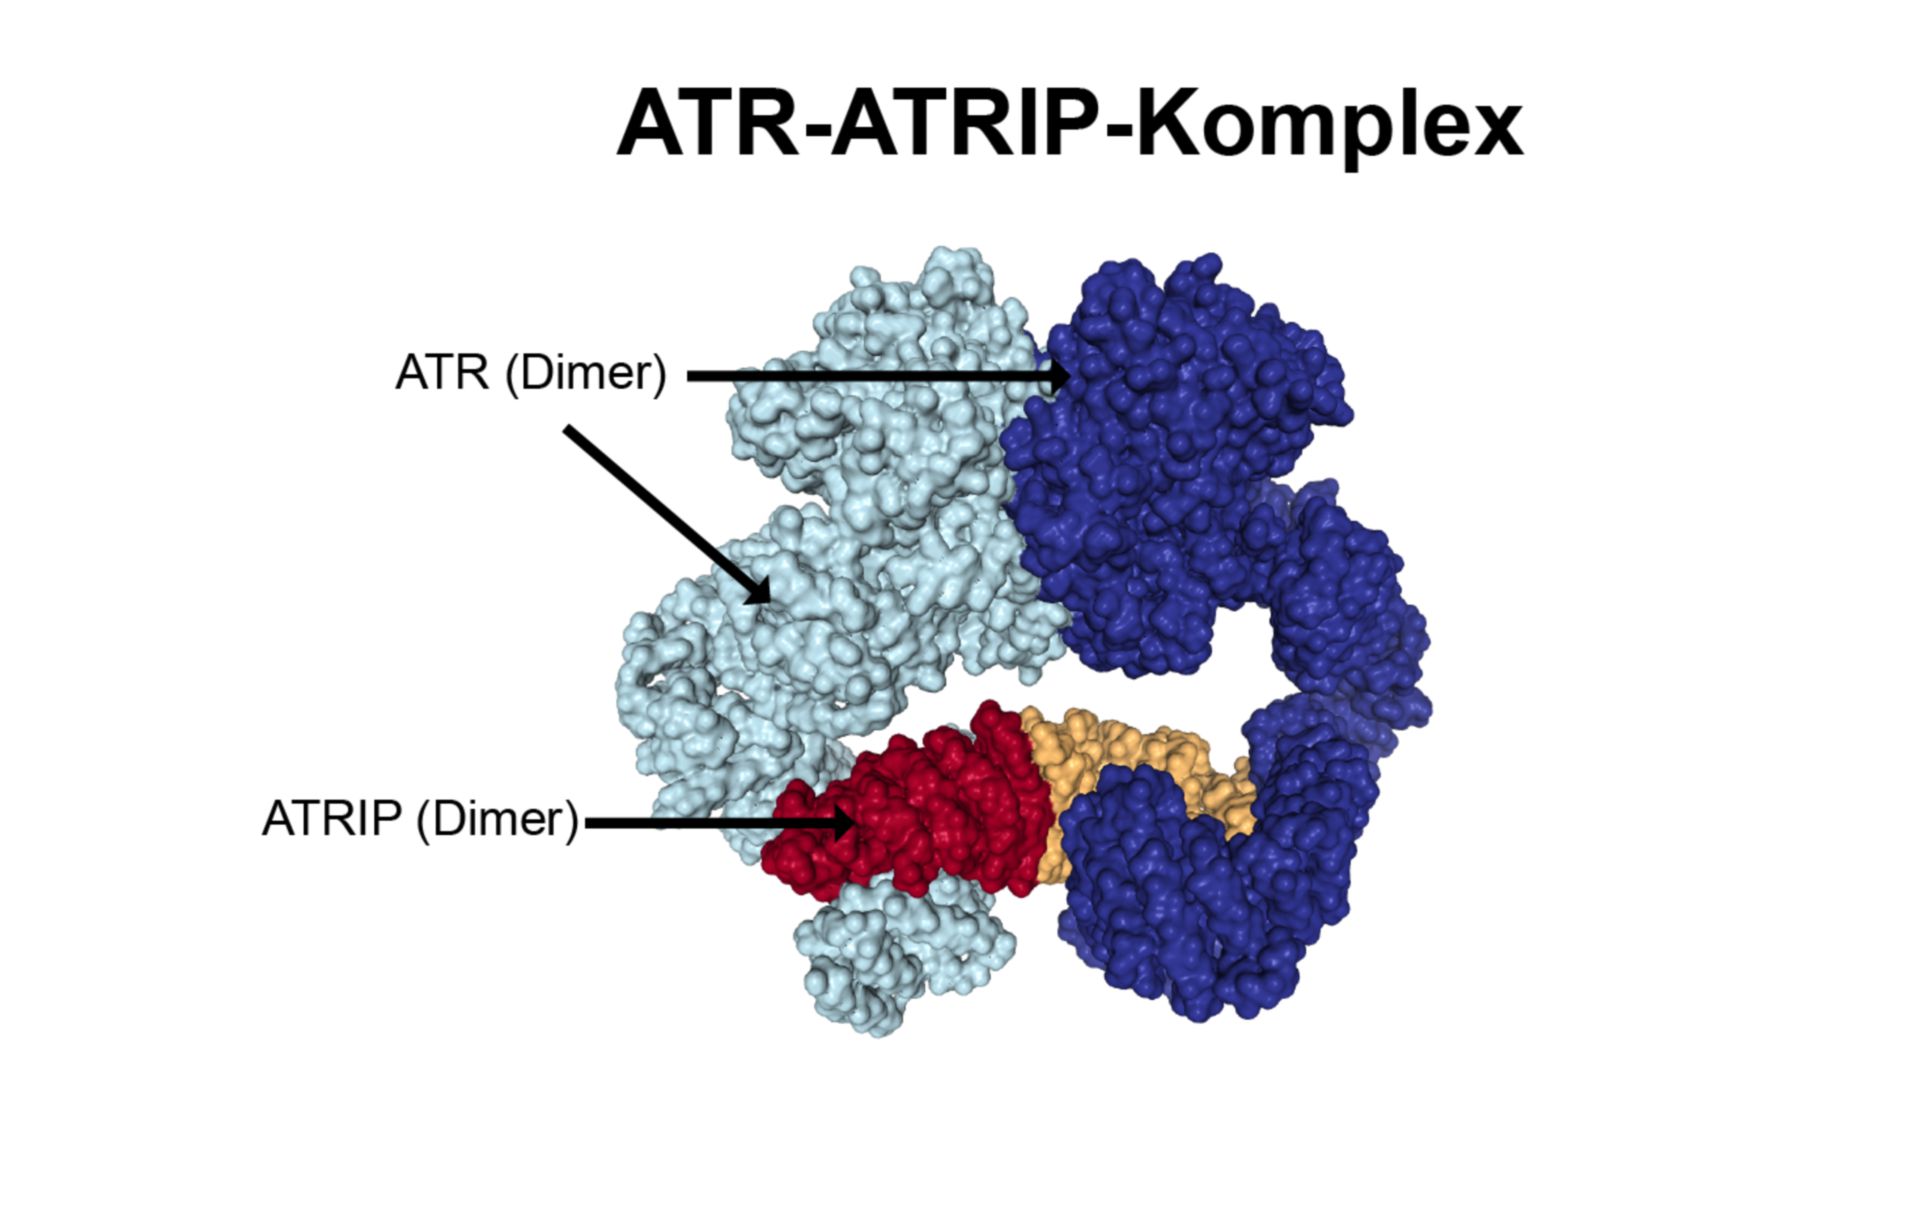 ATR-ATRIP-Komplex